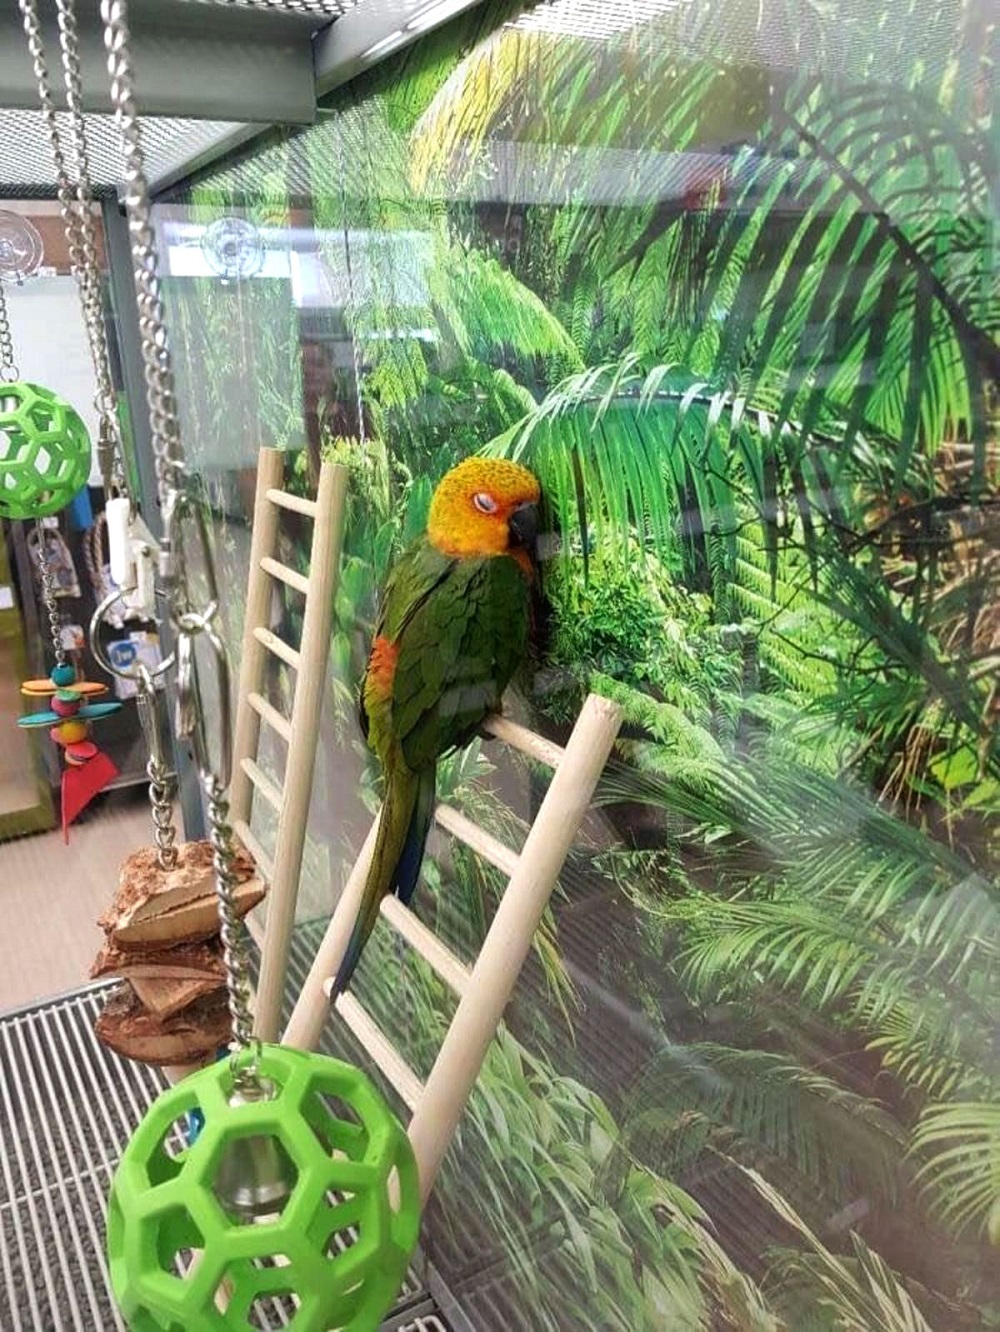 Parrot misses home